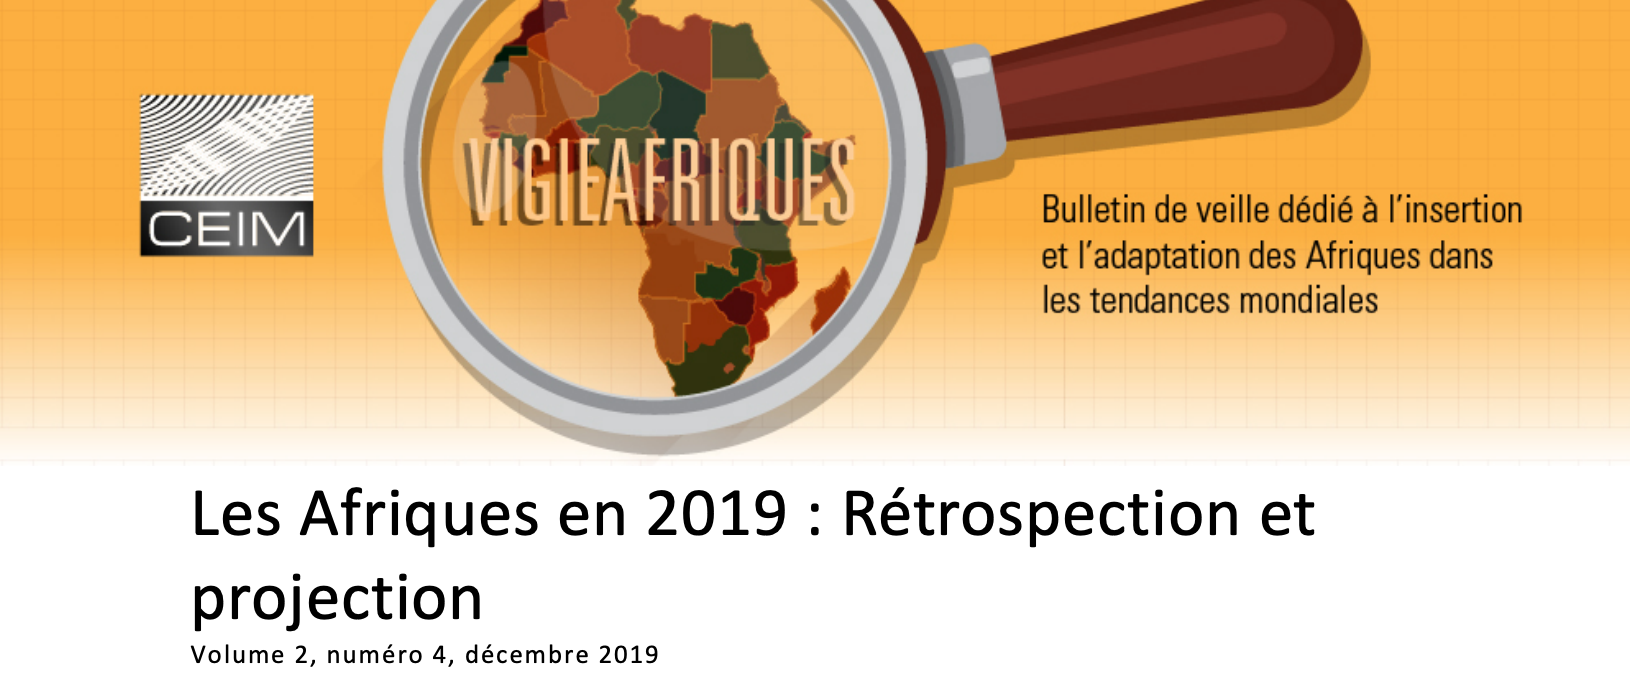 Les Afriques en 2019 : Rétrospection et projection